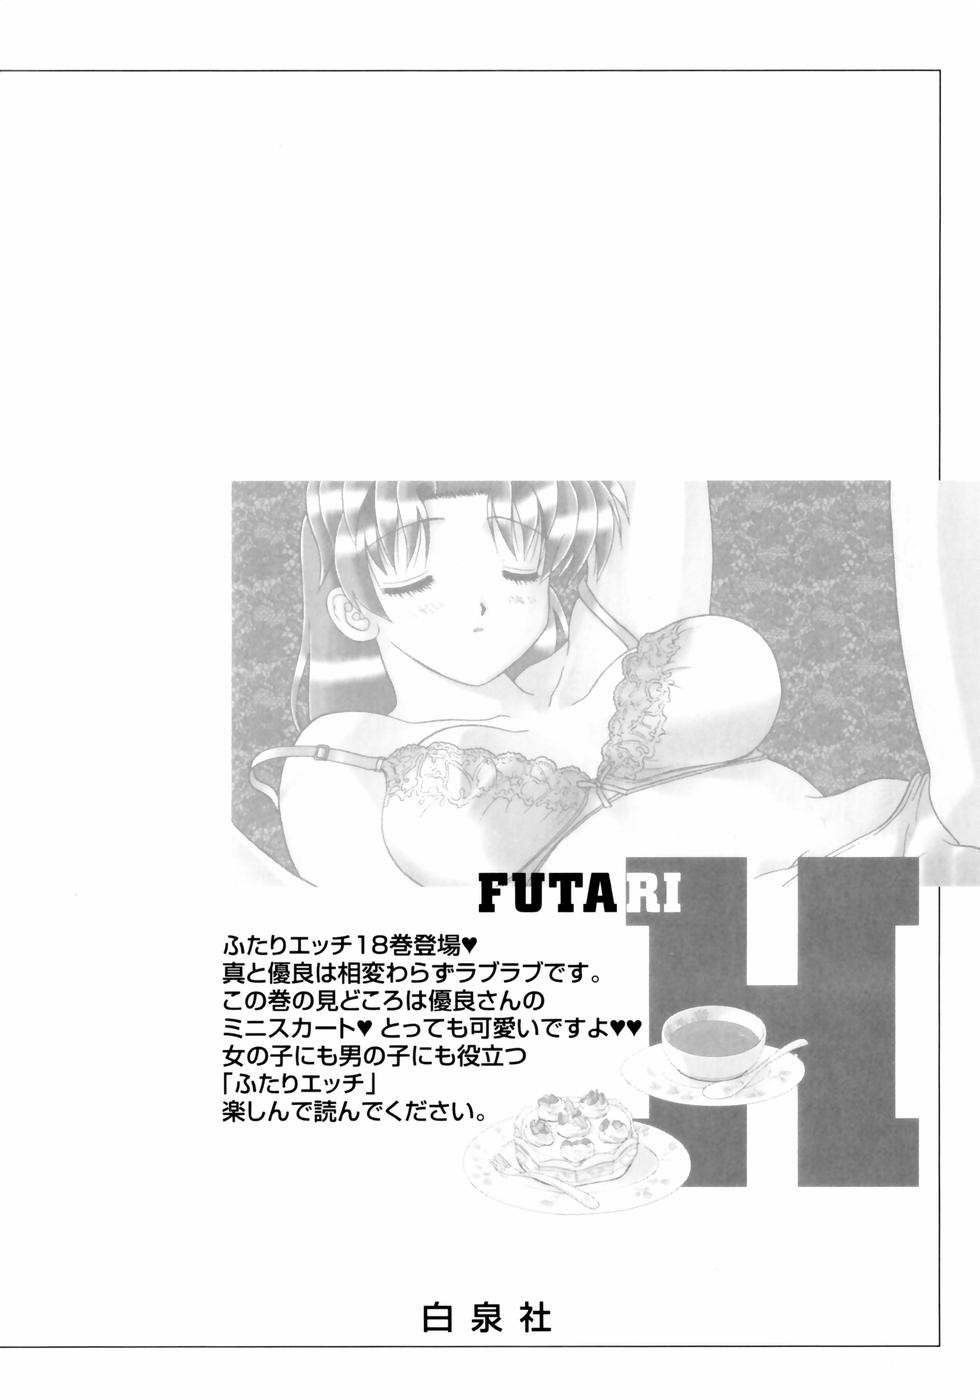 Futari Ecchi - Chapter Vol-018 - Page 181